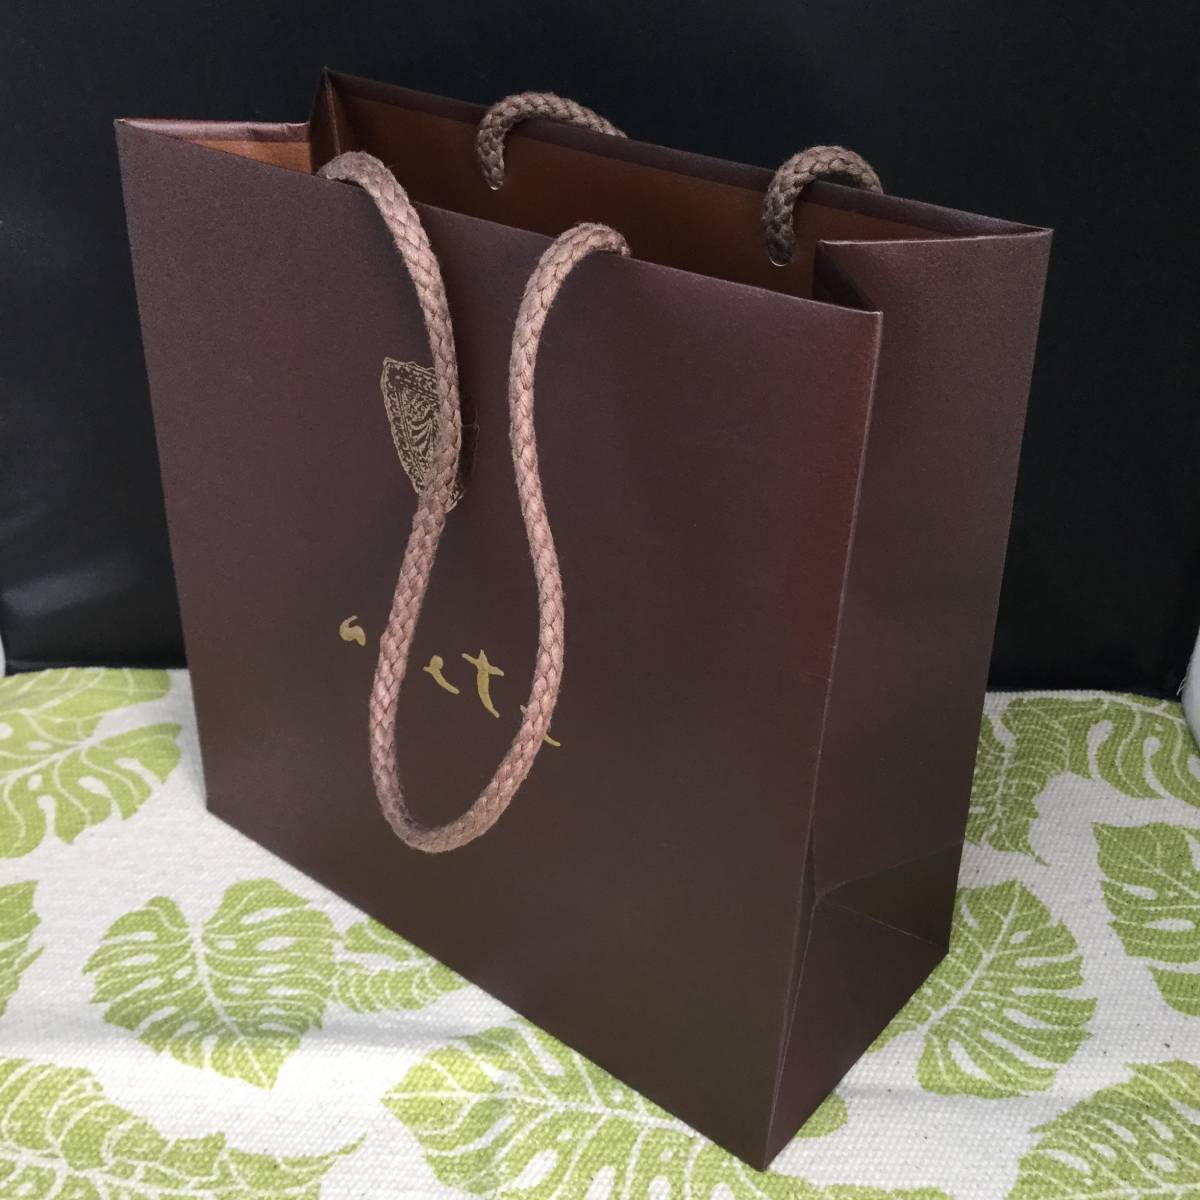 [U] agete Agete box коробка пустой коробка ювелирные изделия кейс сумка бумажный пакет фиолетовый защита пакет 